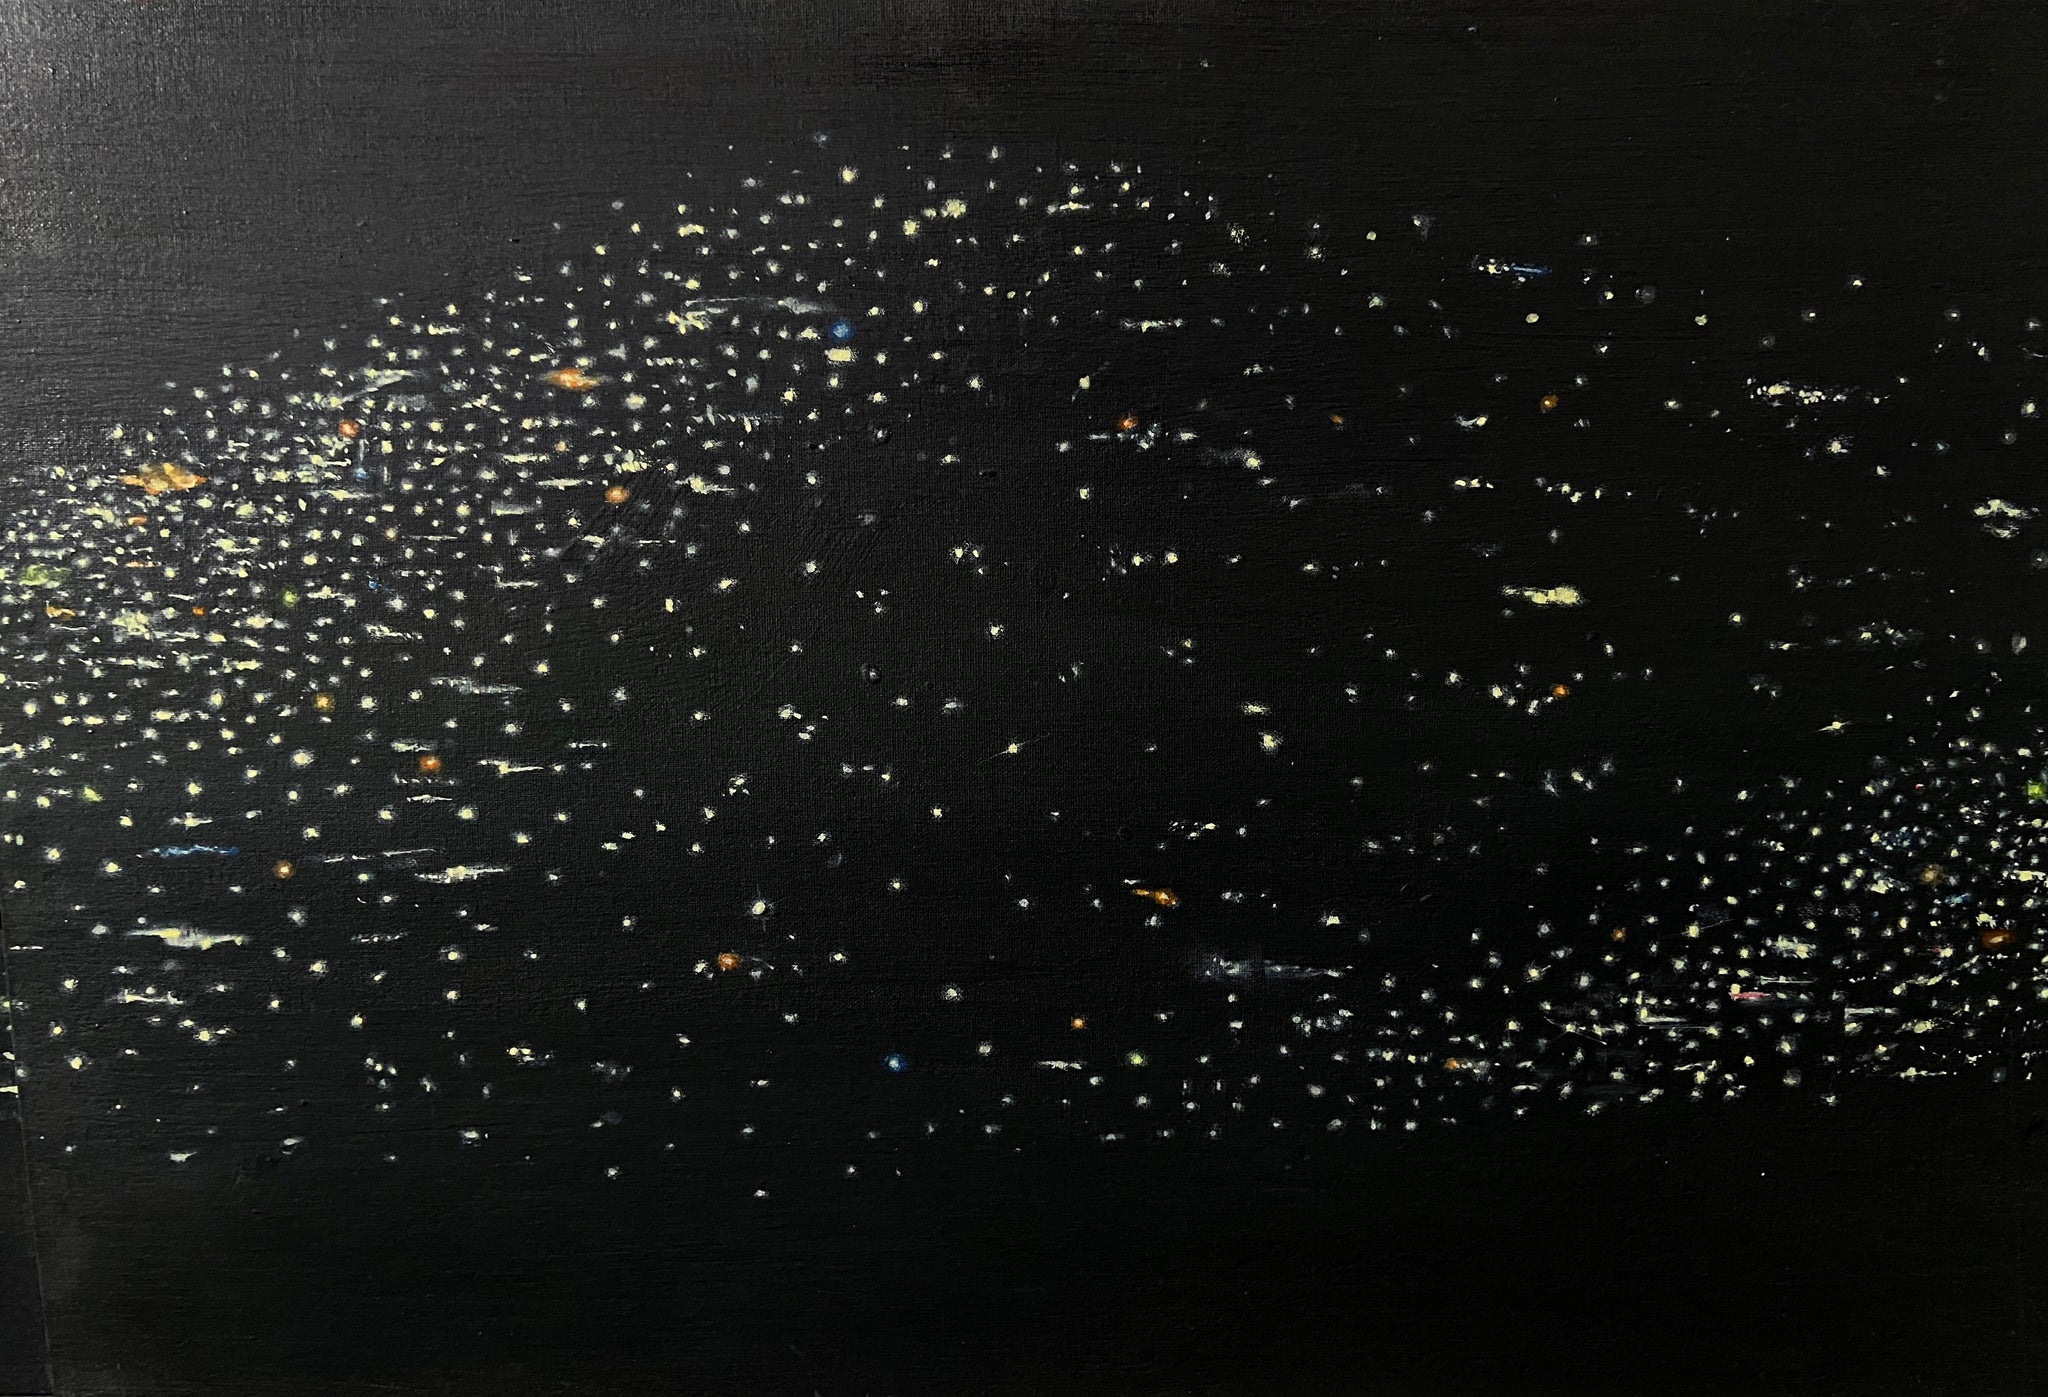 Starling lights by Amar Prajapat